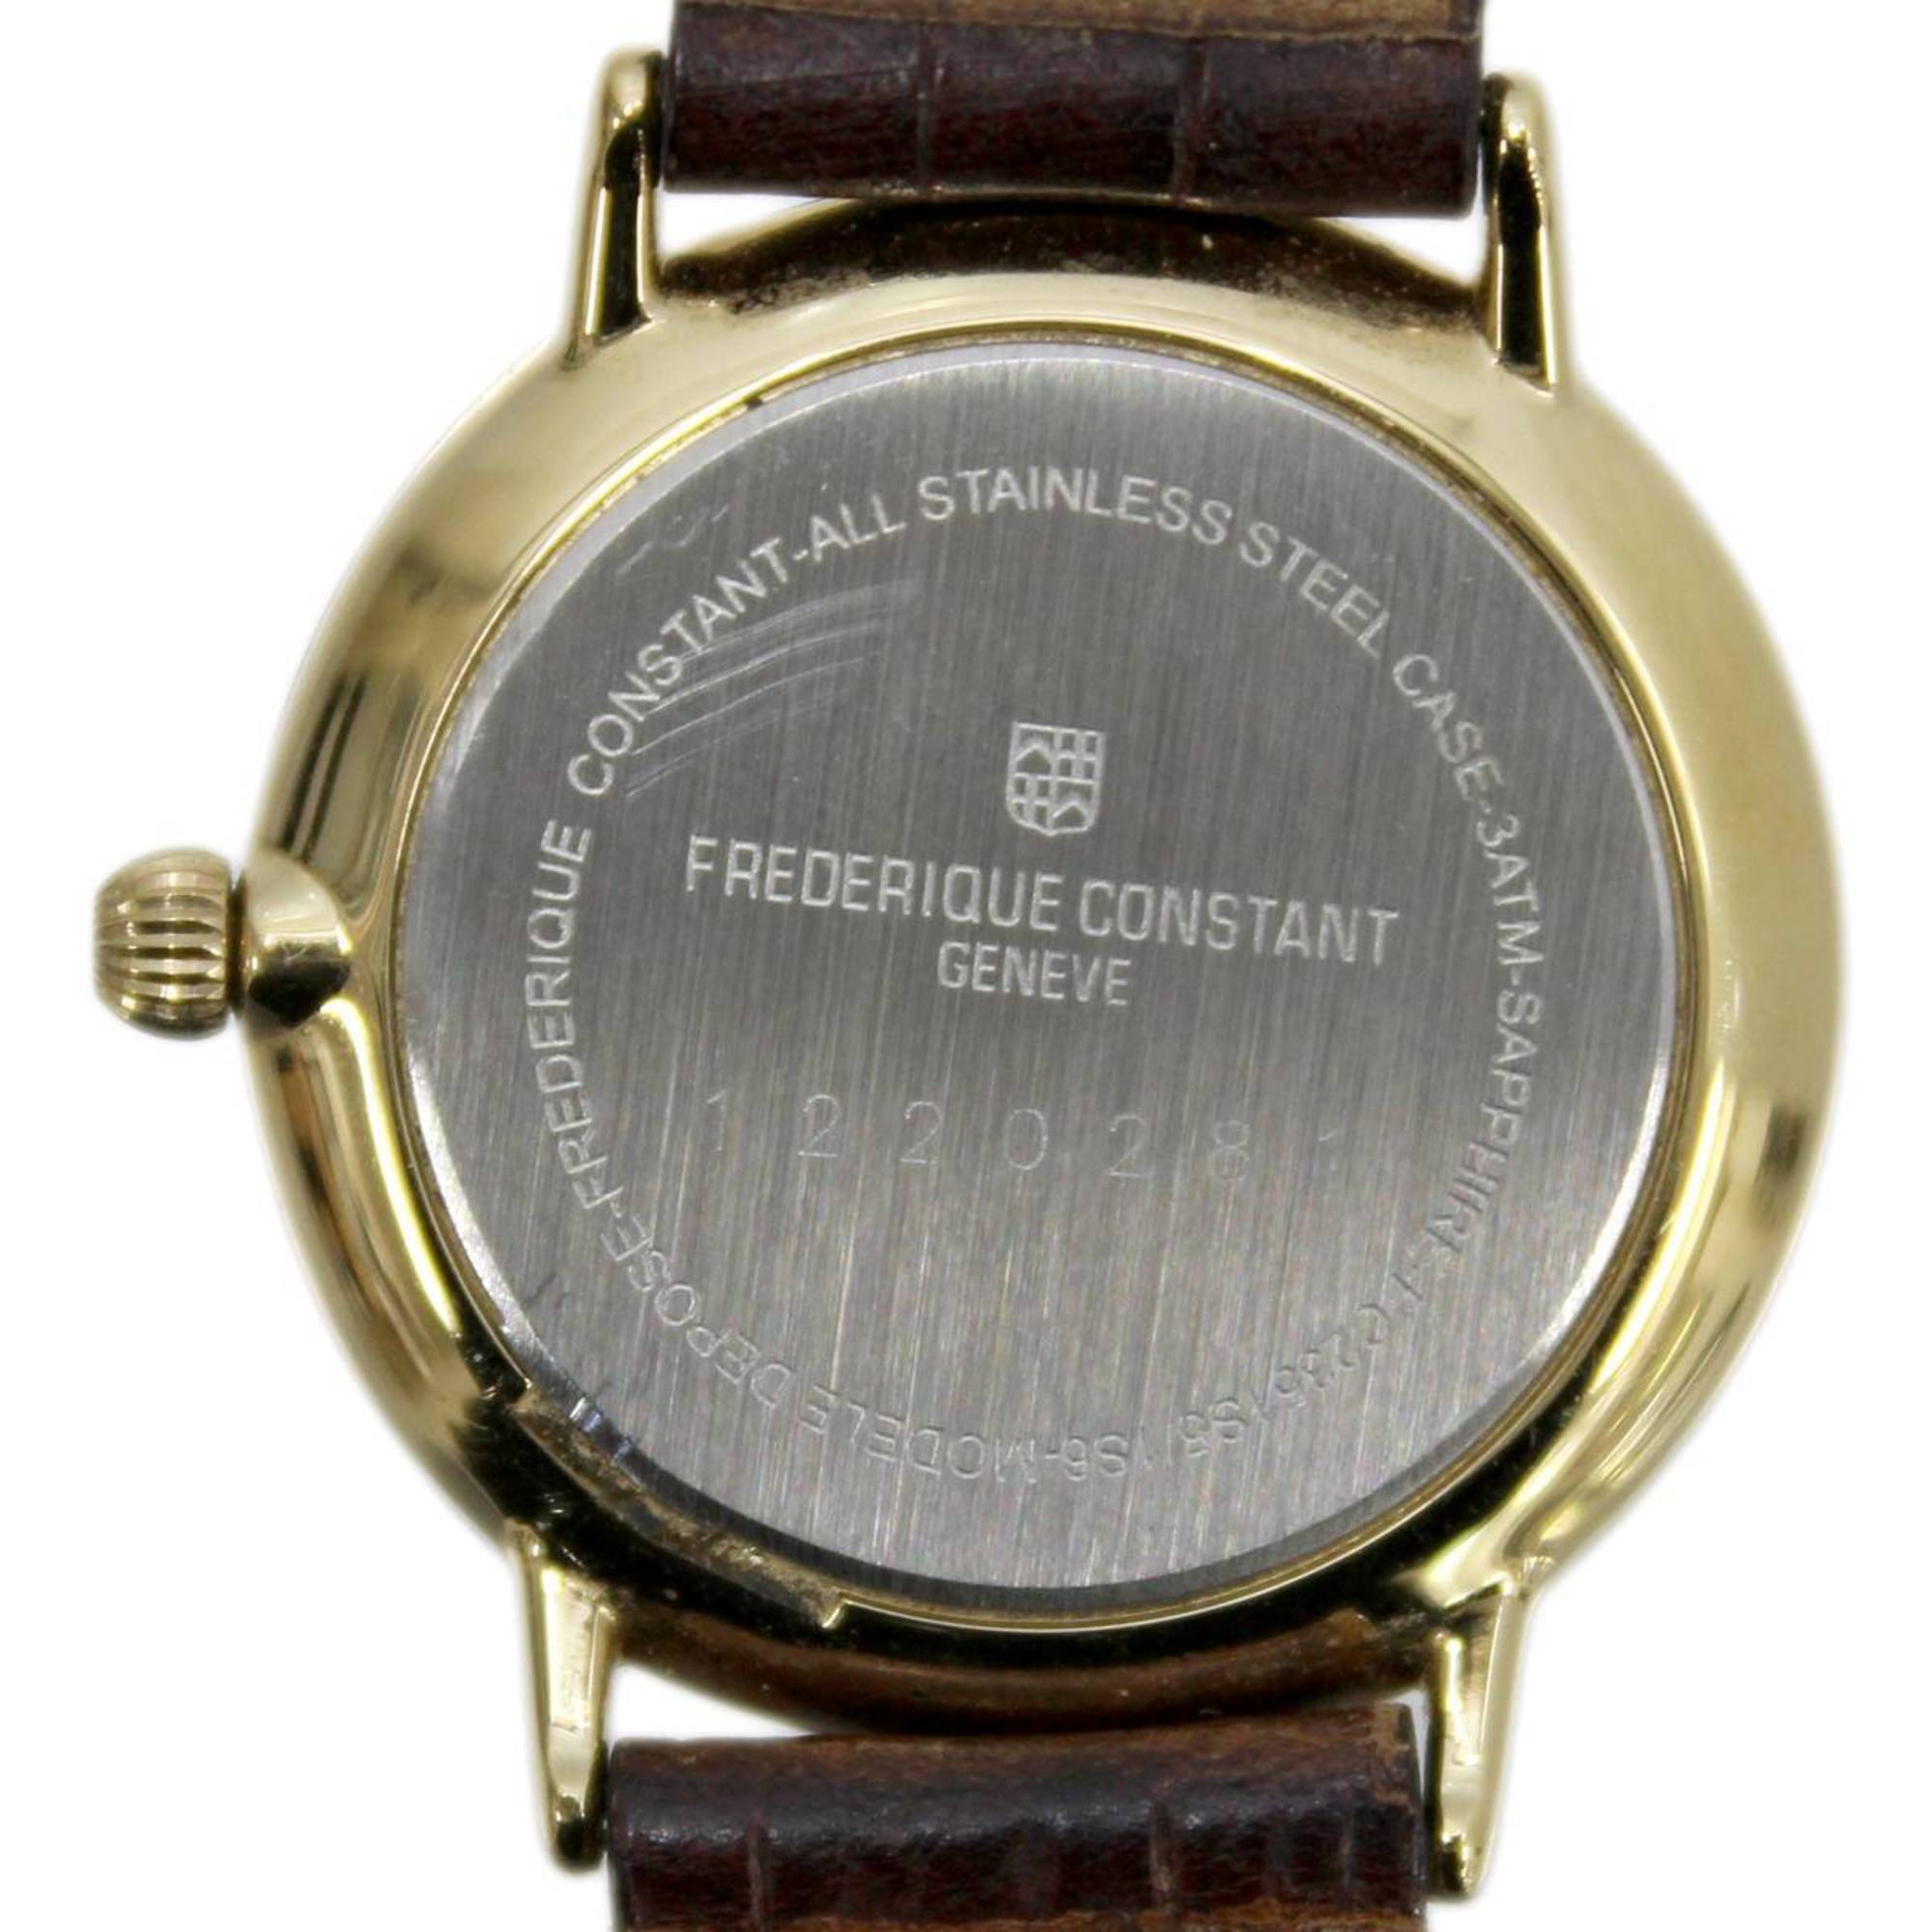 FREDERIQUE CONSTANT Frederique constant quartz watch FC2351S5 1S6 SS, YG, brown